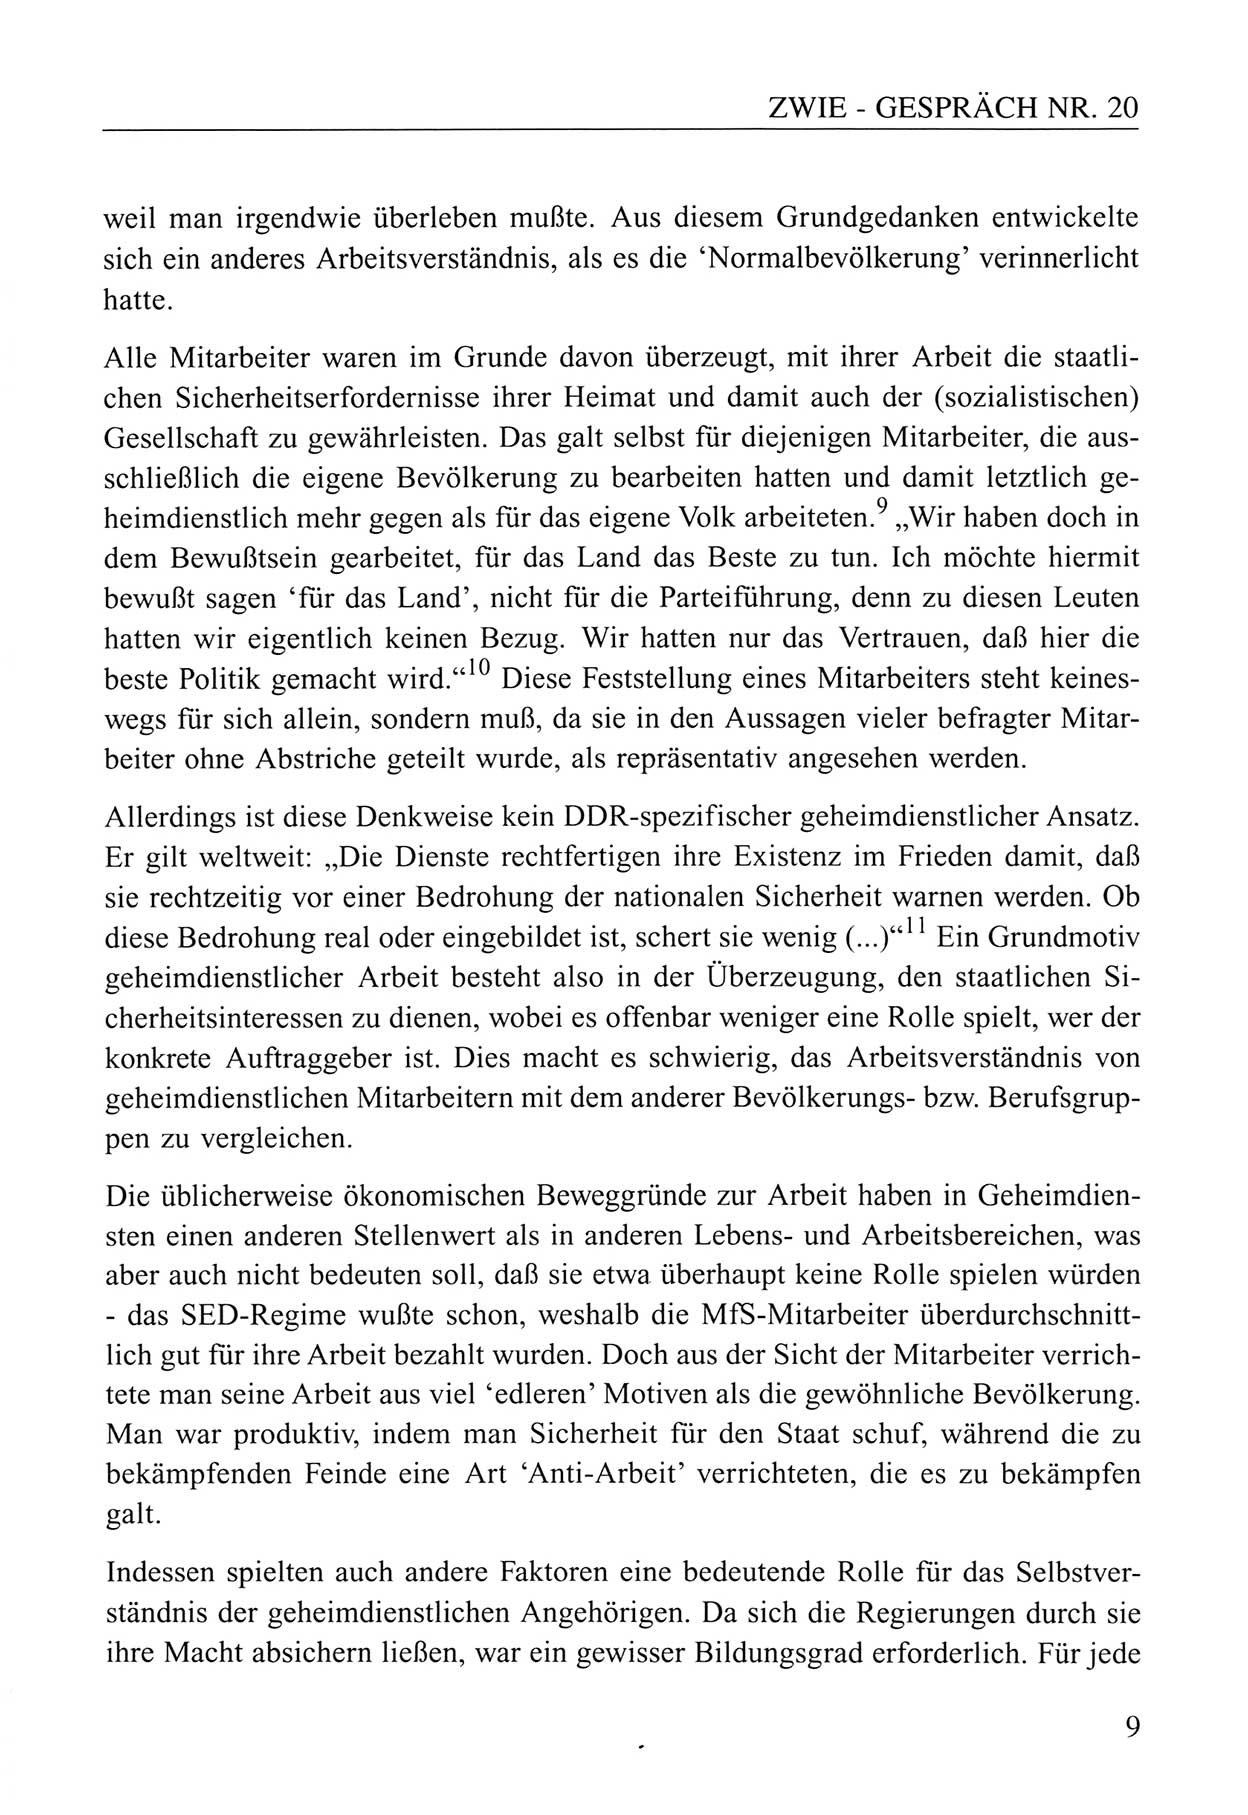 Zwie-Gespräch, Beiträge zum Umgang mit der Staatssicherheits-Vergangenheit [Deutsche Demokratische Republik (DDR)], Ausgabe Nr. 20, Berlin 1994, Seite 9 (Zwie-Gespr. Ausg. 20 1994, S. 9)